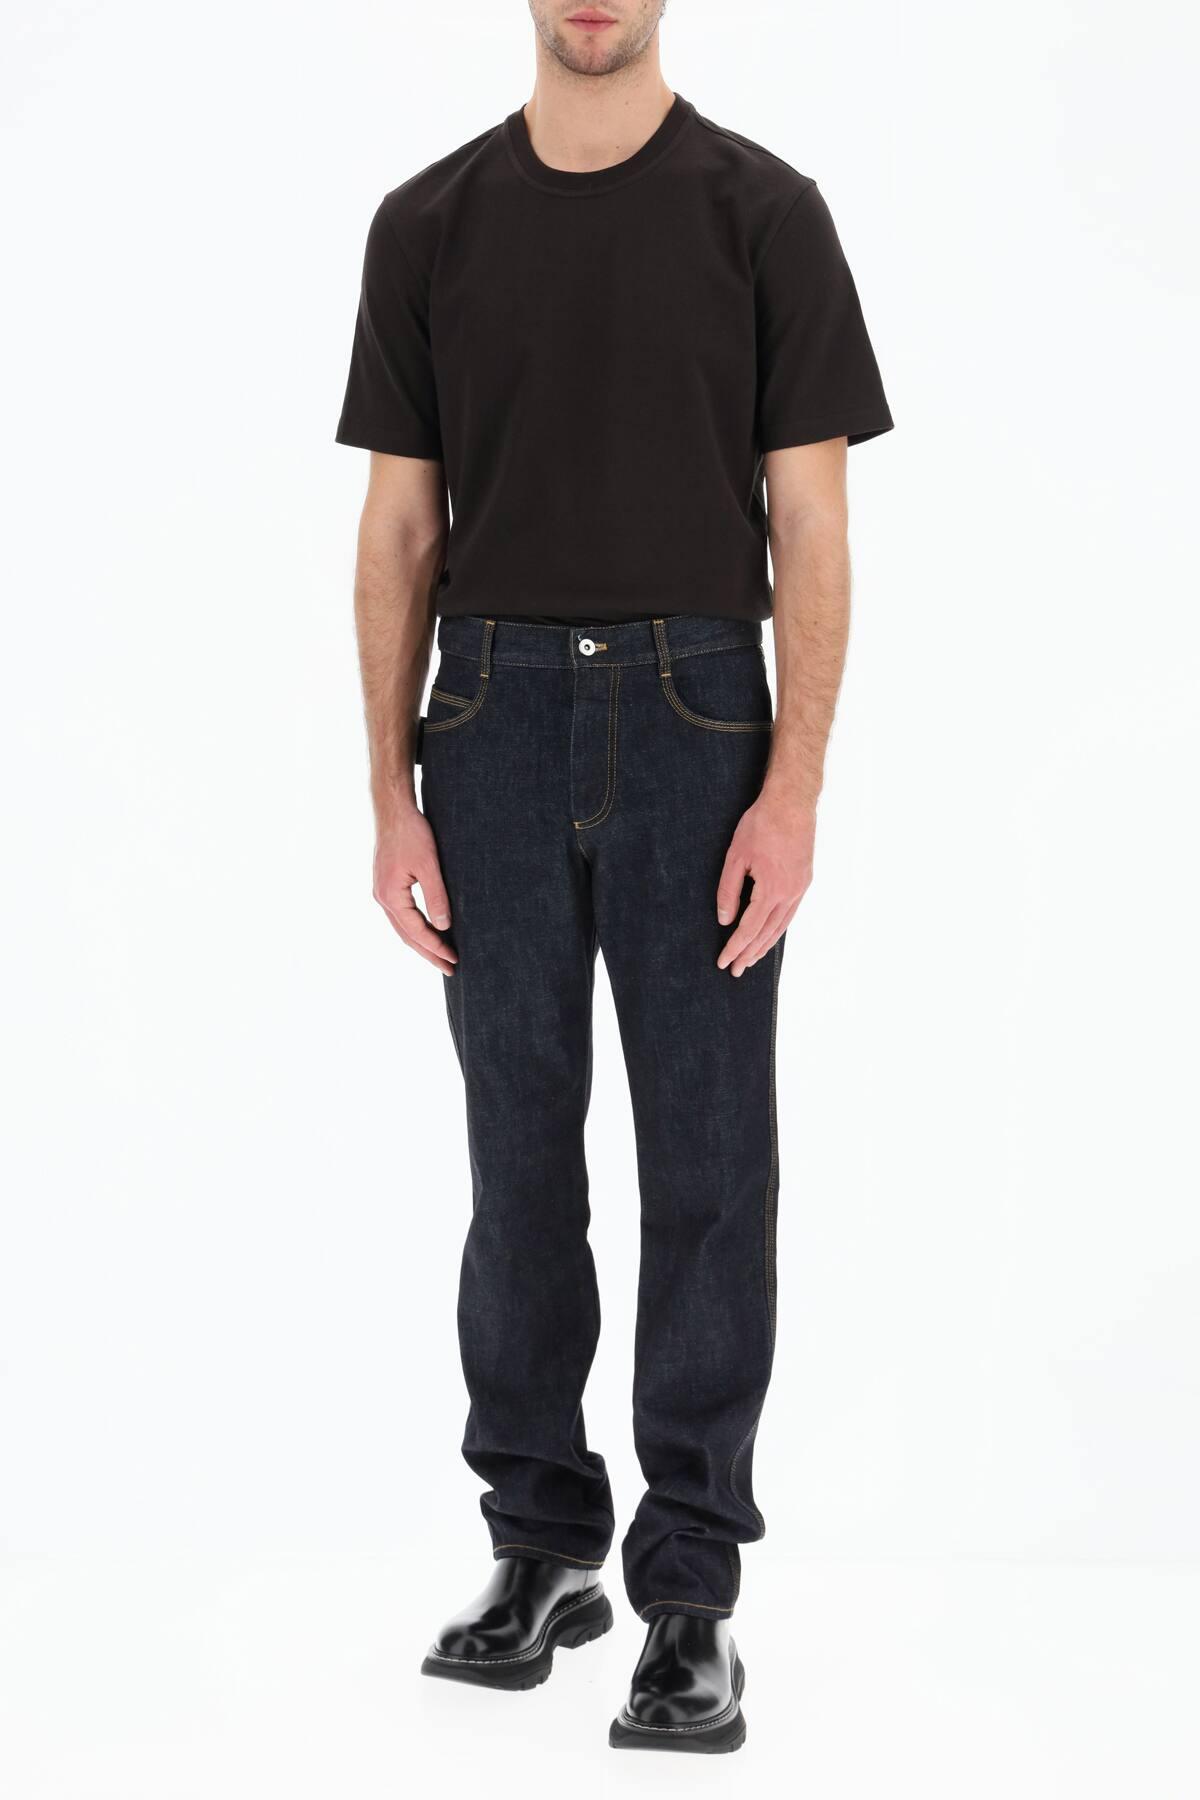 Bottega Veneta Cotton Basic T-shirt in Brown for Men - Lyst